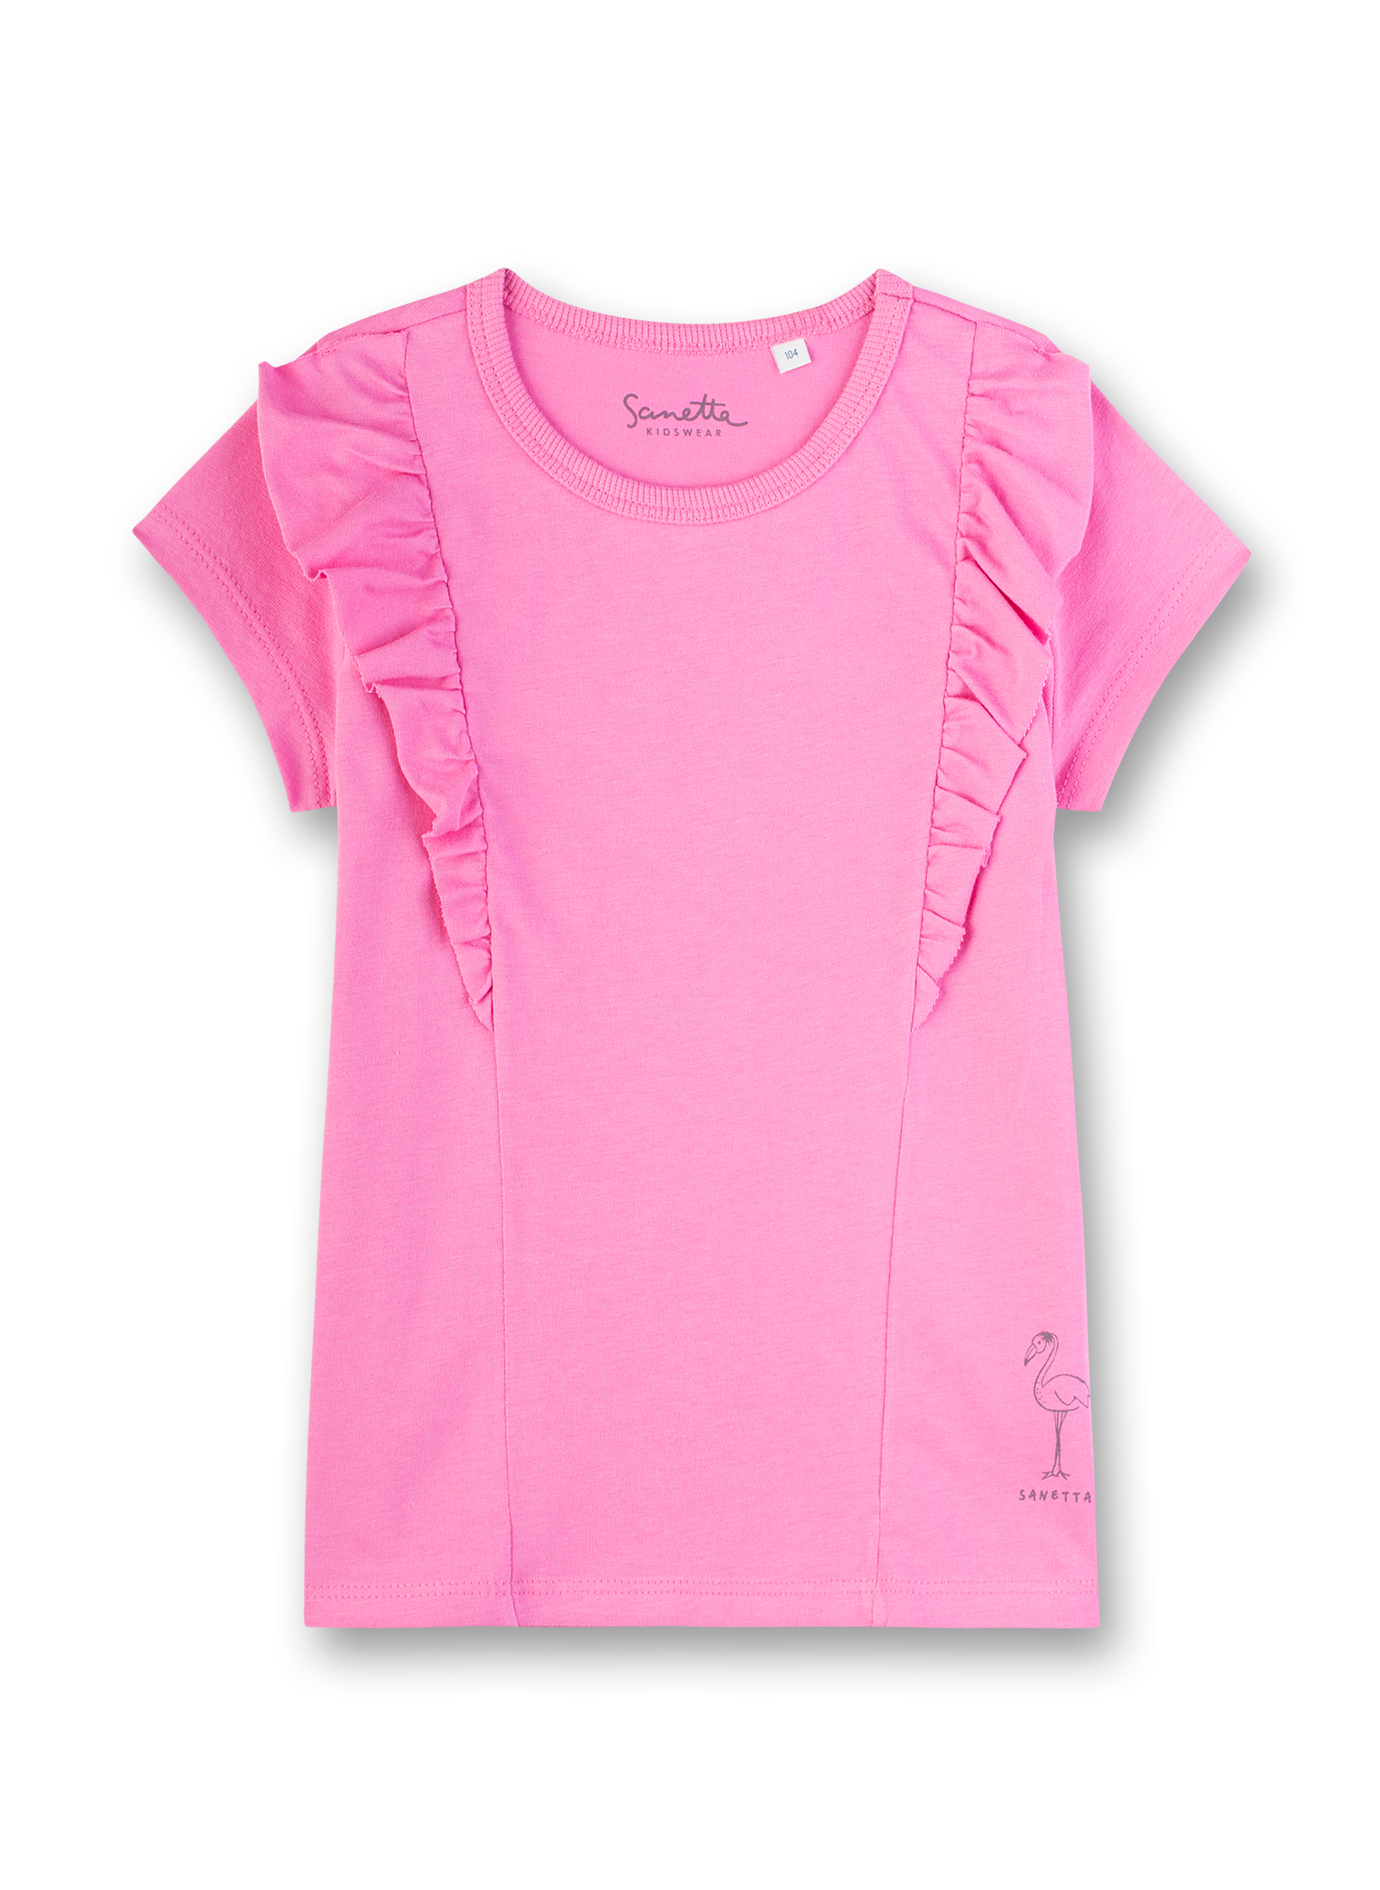 Mädchen T-Shirt Rosa Wild Cat